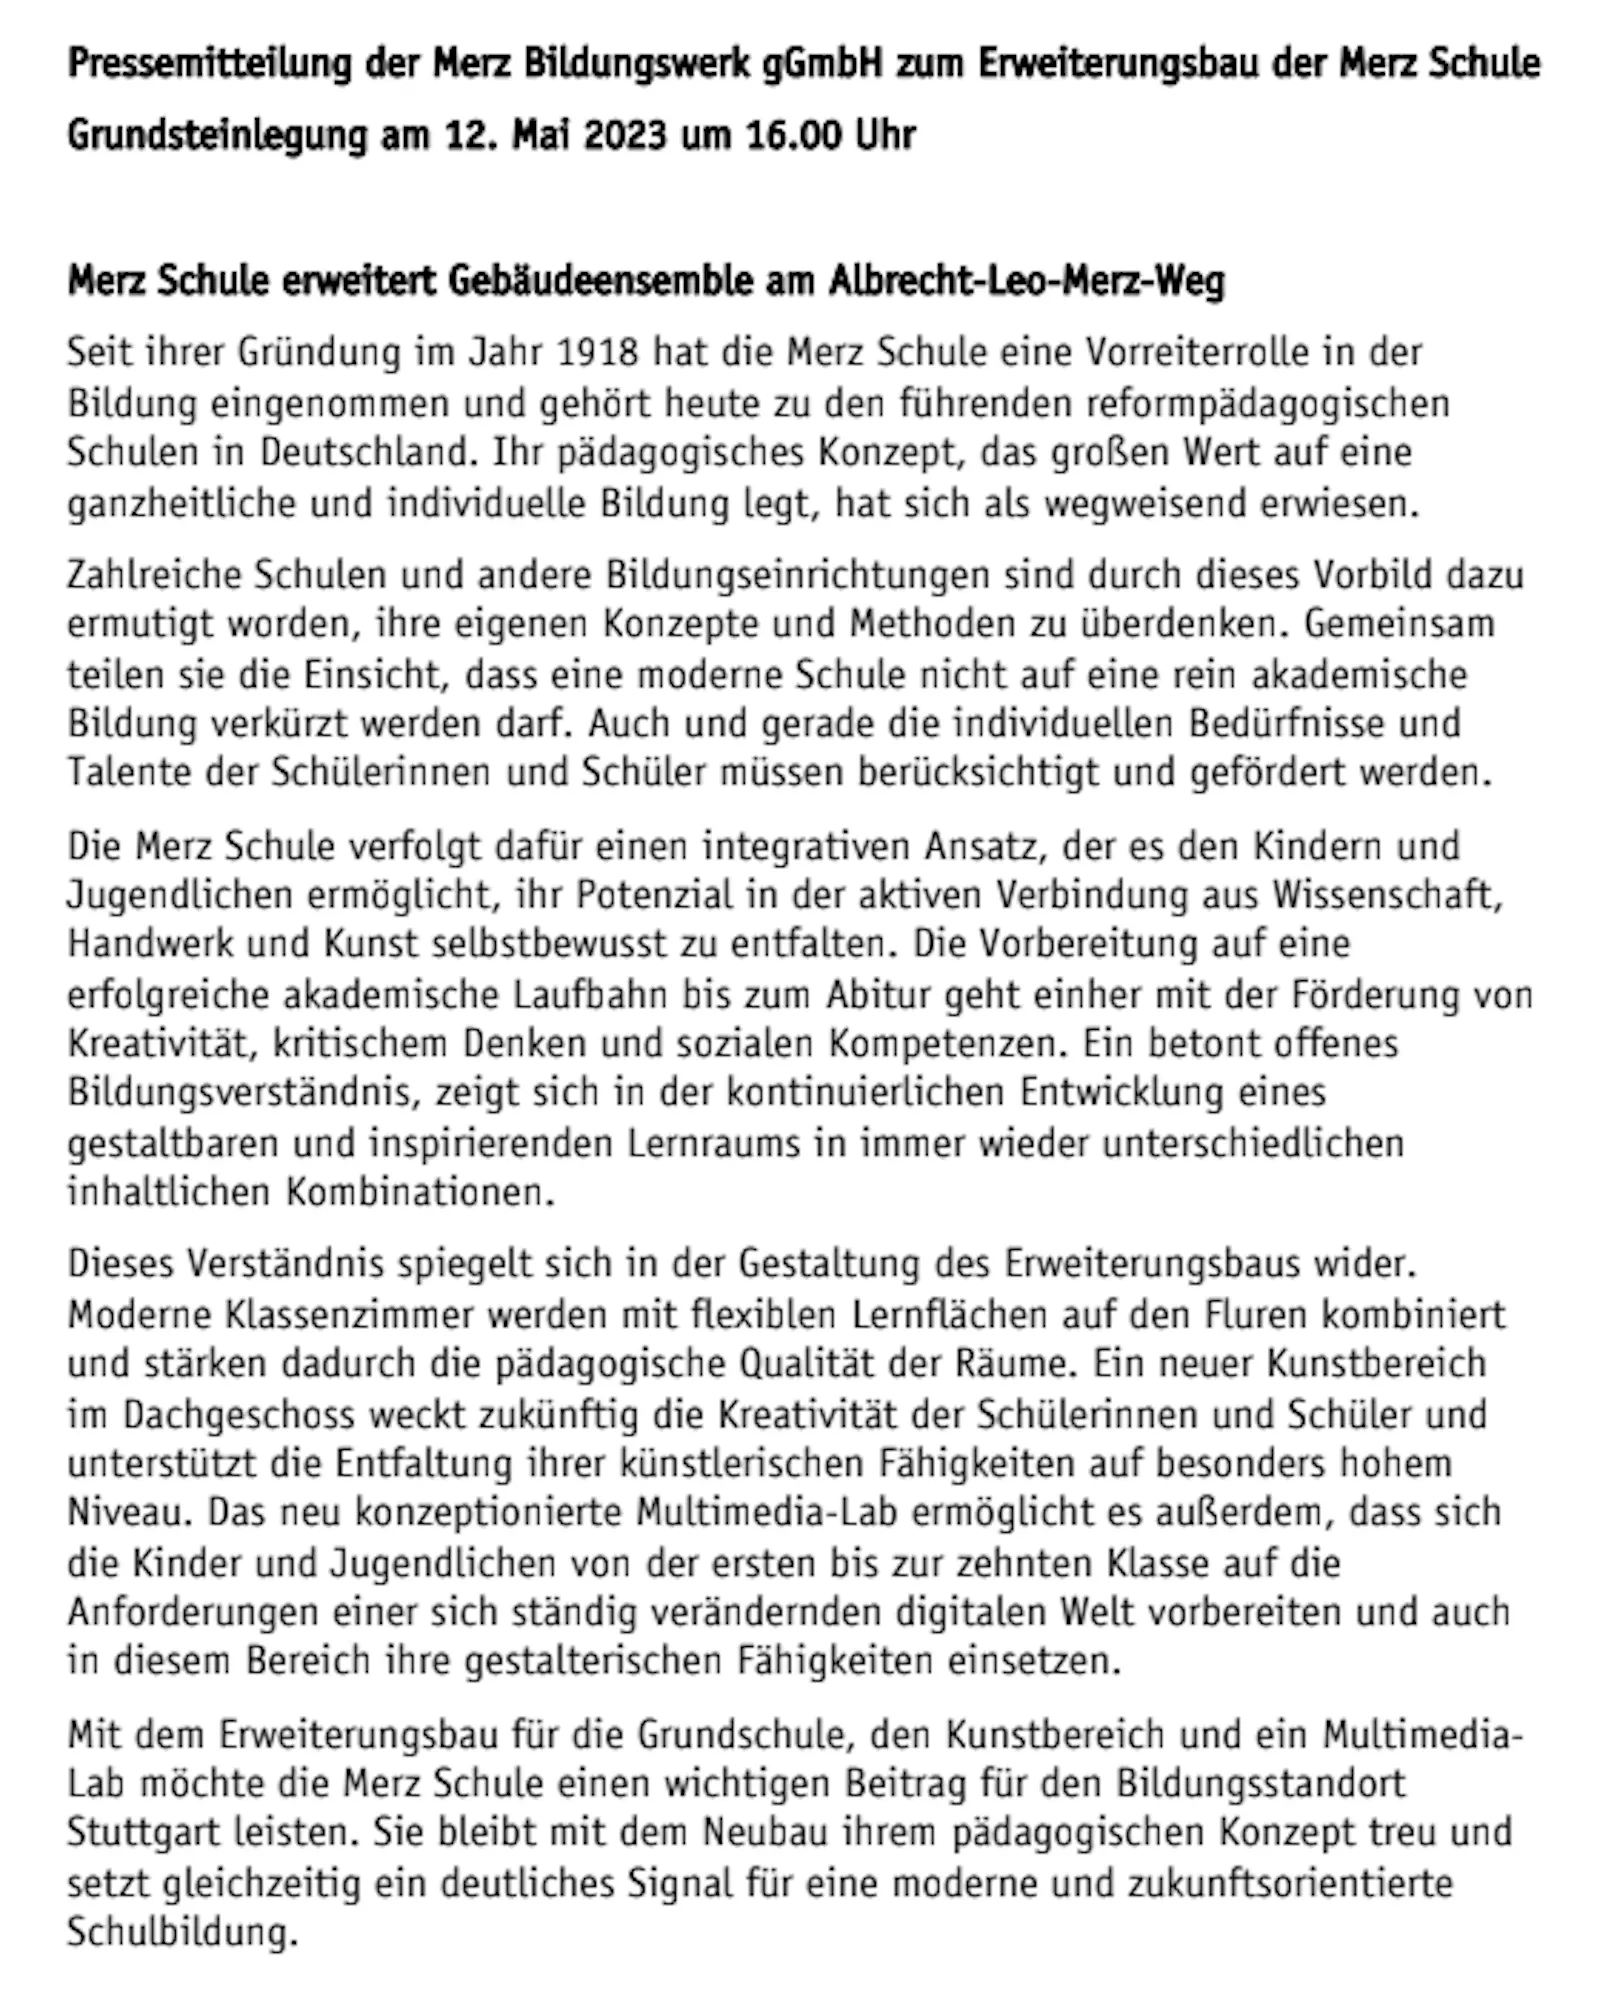 Pressemitteilung der Merz Bildungswerk gGmbH zur Grundsteinlegung für den Erweiterungsbau für die Merz Schule.